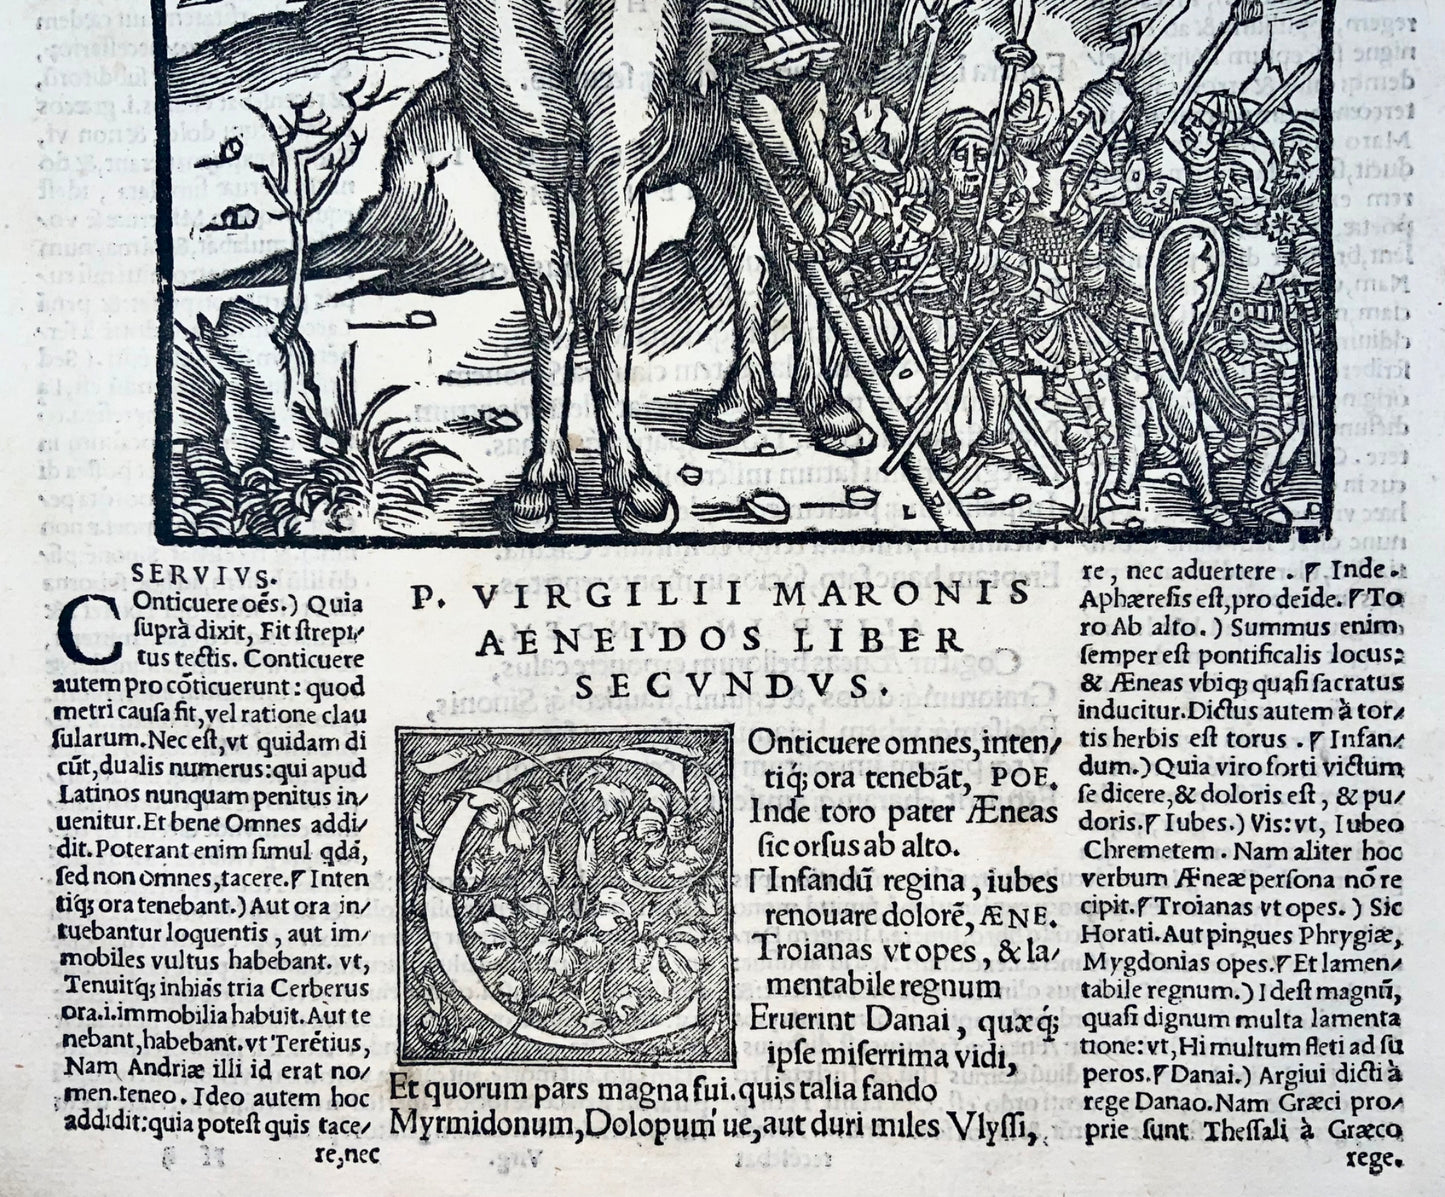 1517 Folio Gruninger foglia in legno dall'Eneide di Virgilio, cavallo di Troia, mitologia, incisione magistrale